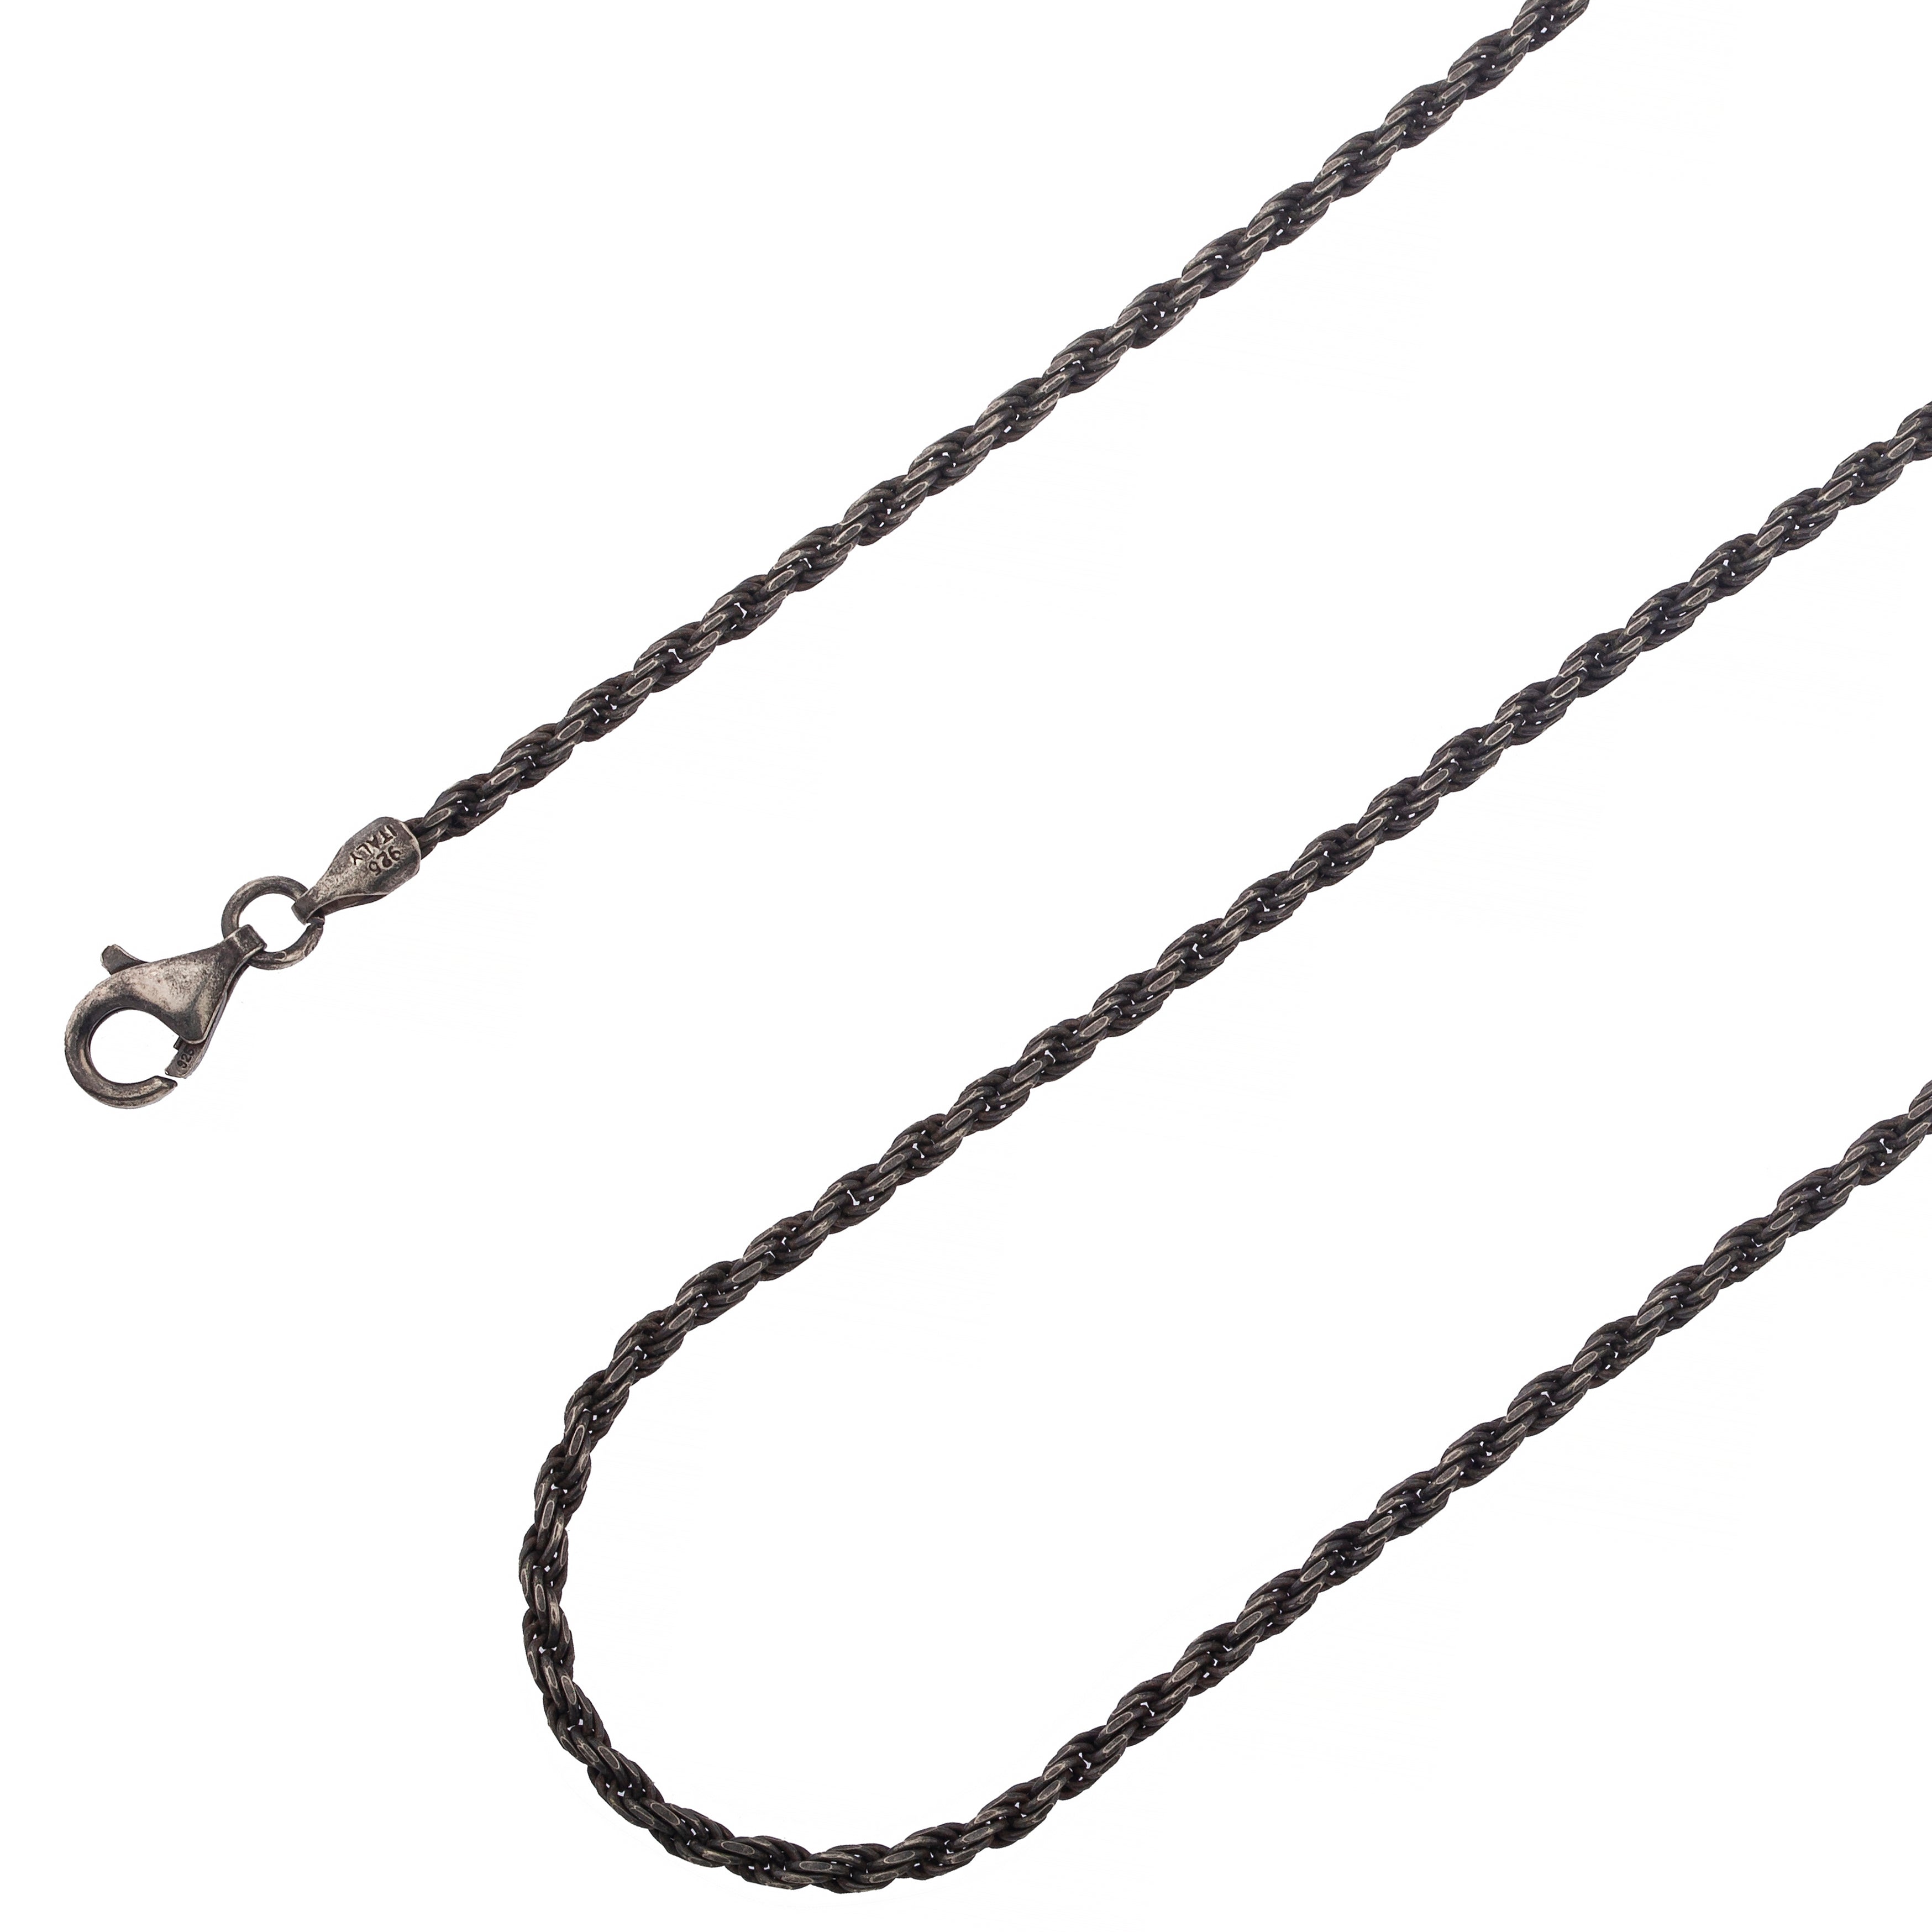 14K Rope Chain - Thin 2.5mm 24